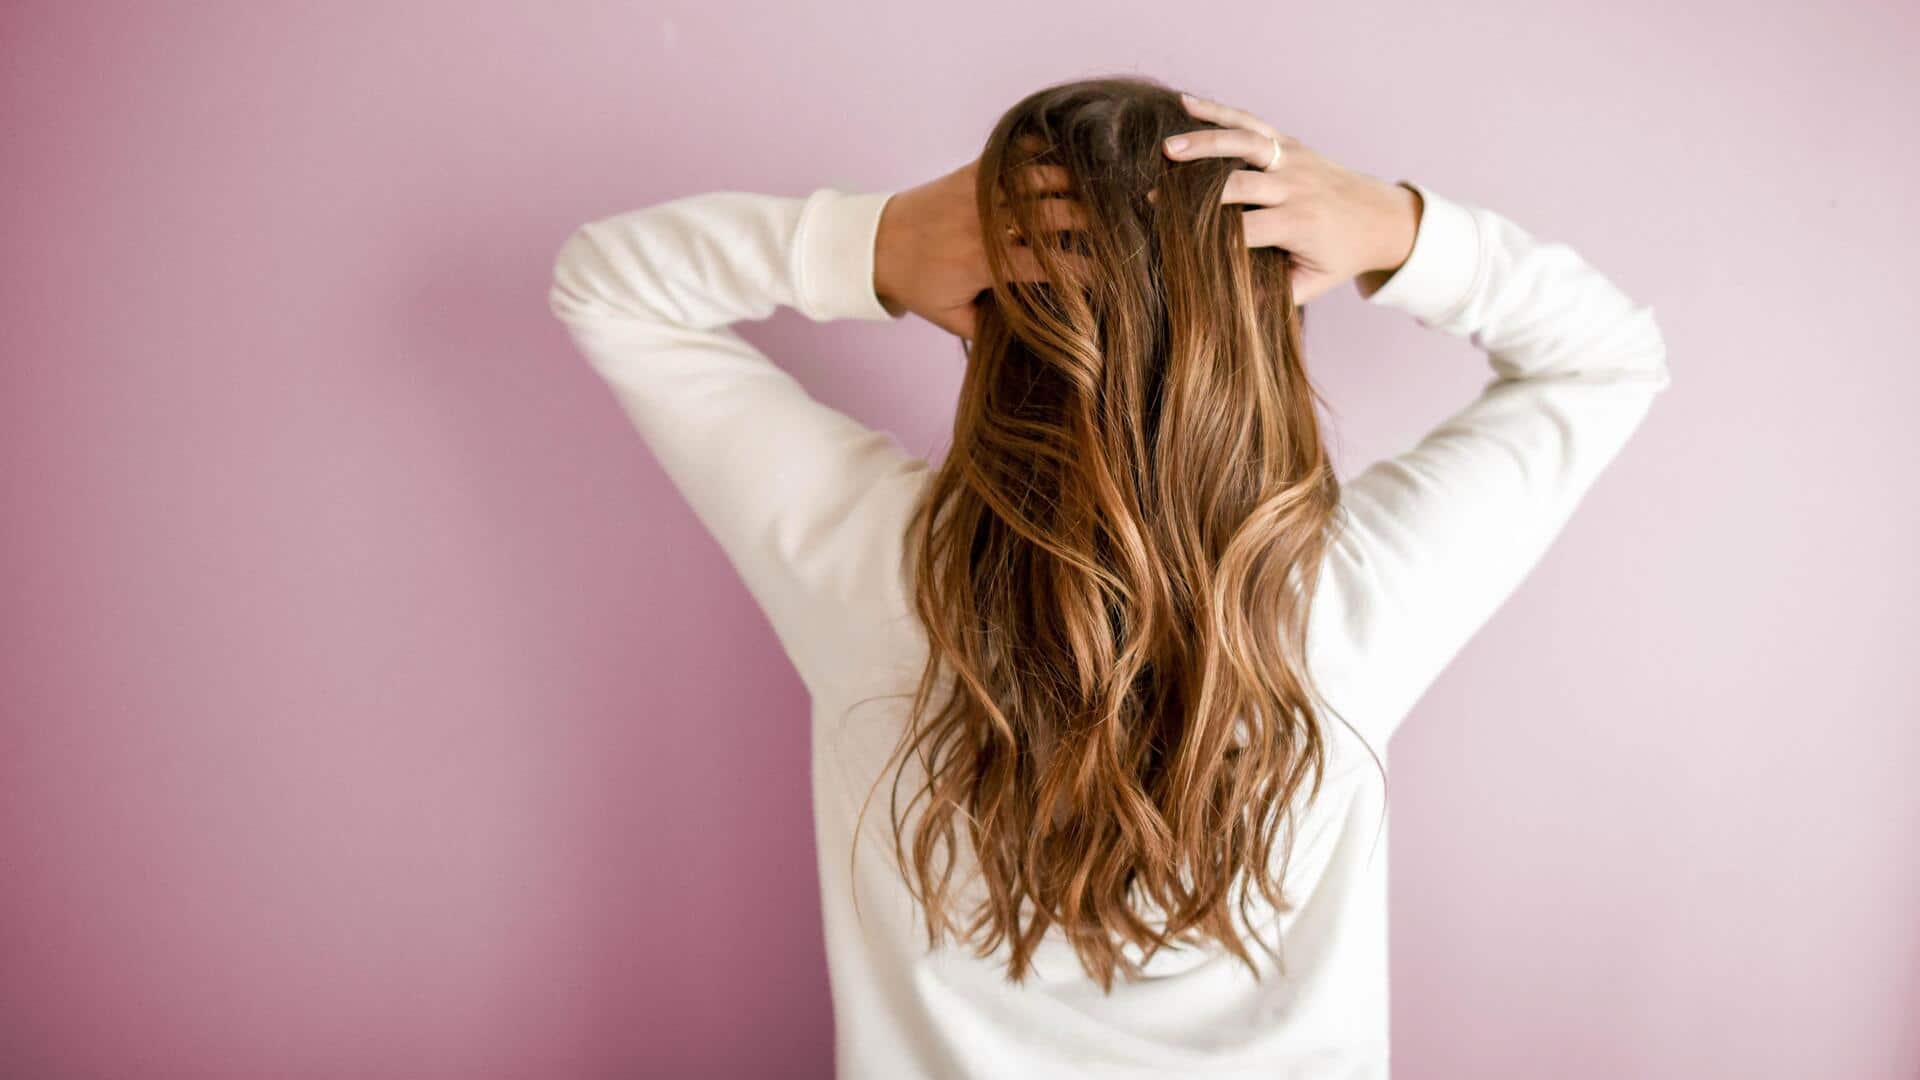 गर्मियों में बालों की देखभाल के लिए अपनाएं ये टिप्स, बाल रहेंगे मजबूत और स्वस्थ